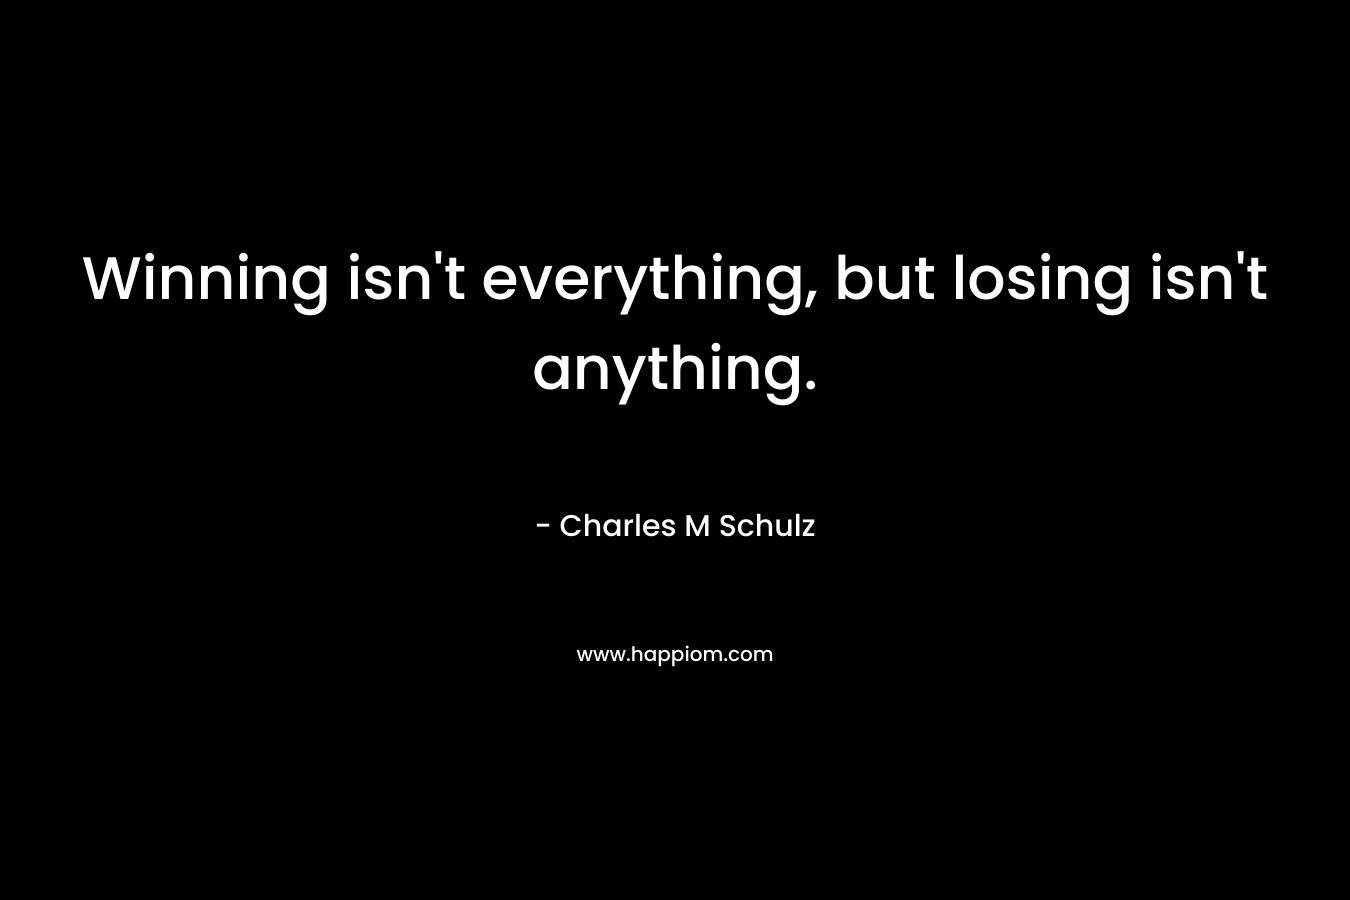 Winning isn't everything, but losing isn't anything.